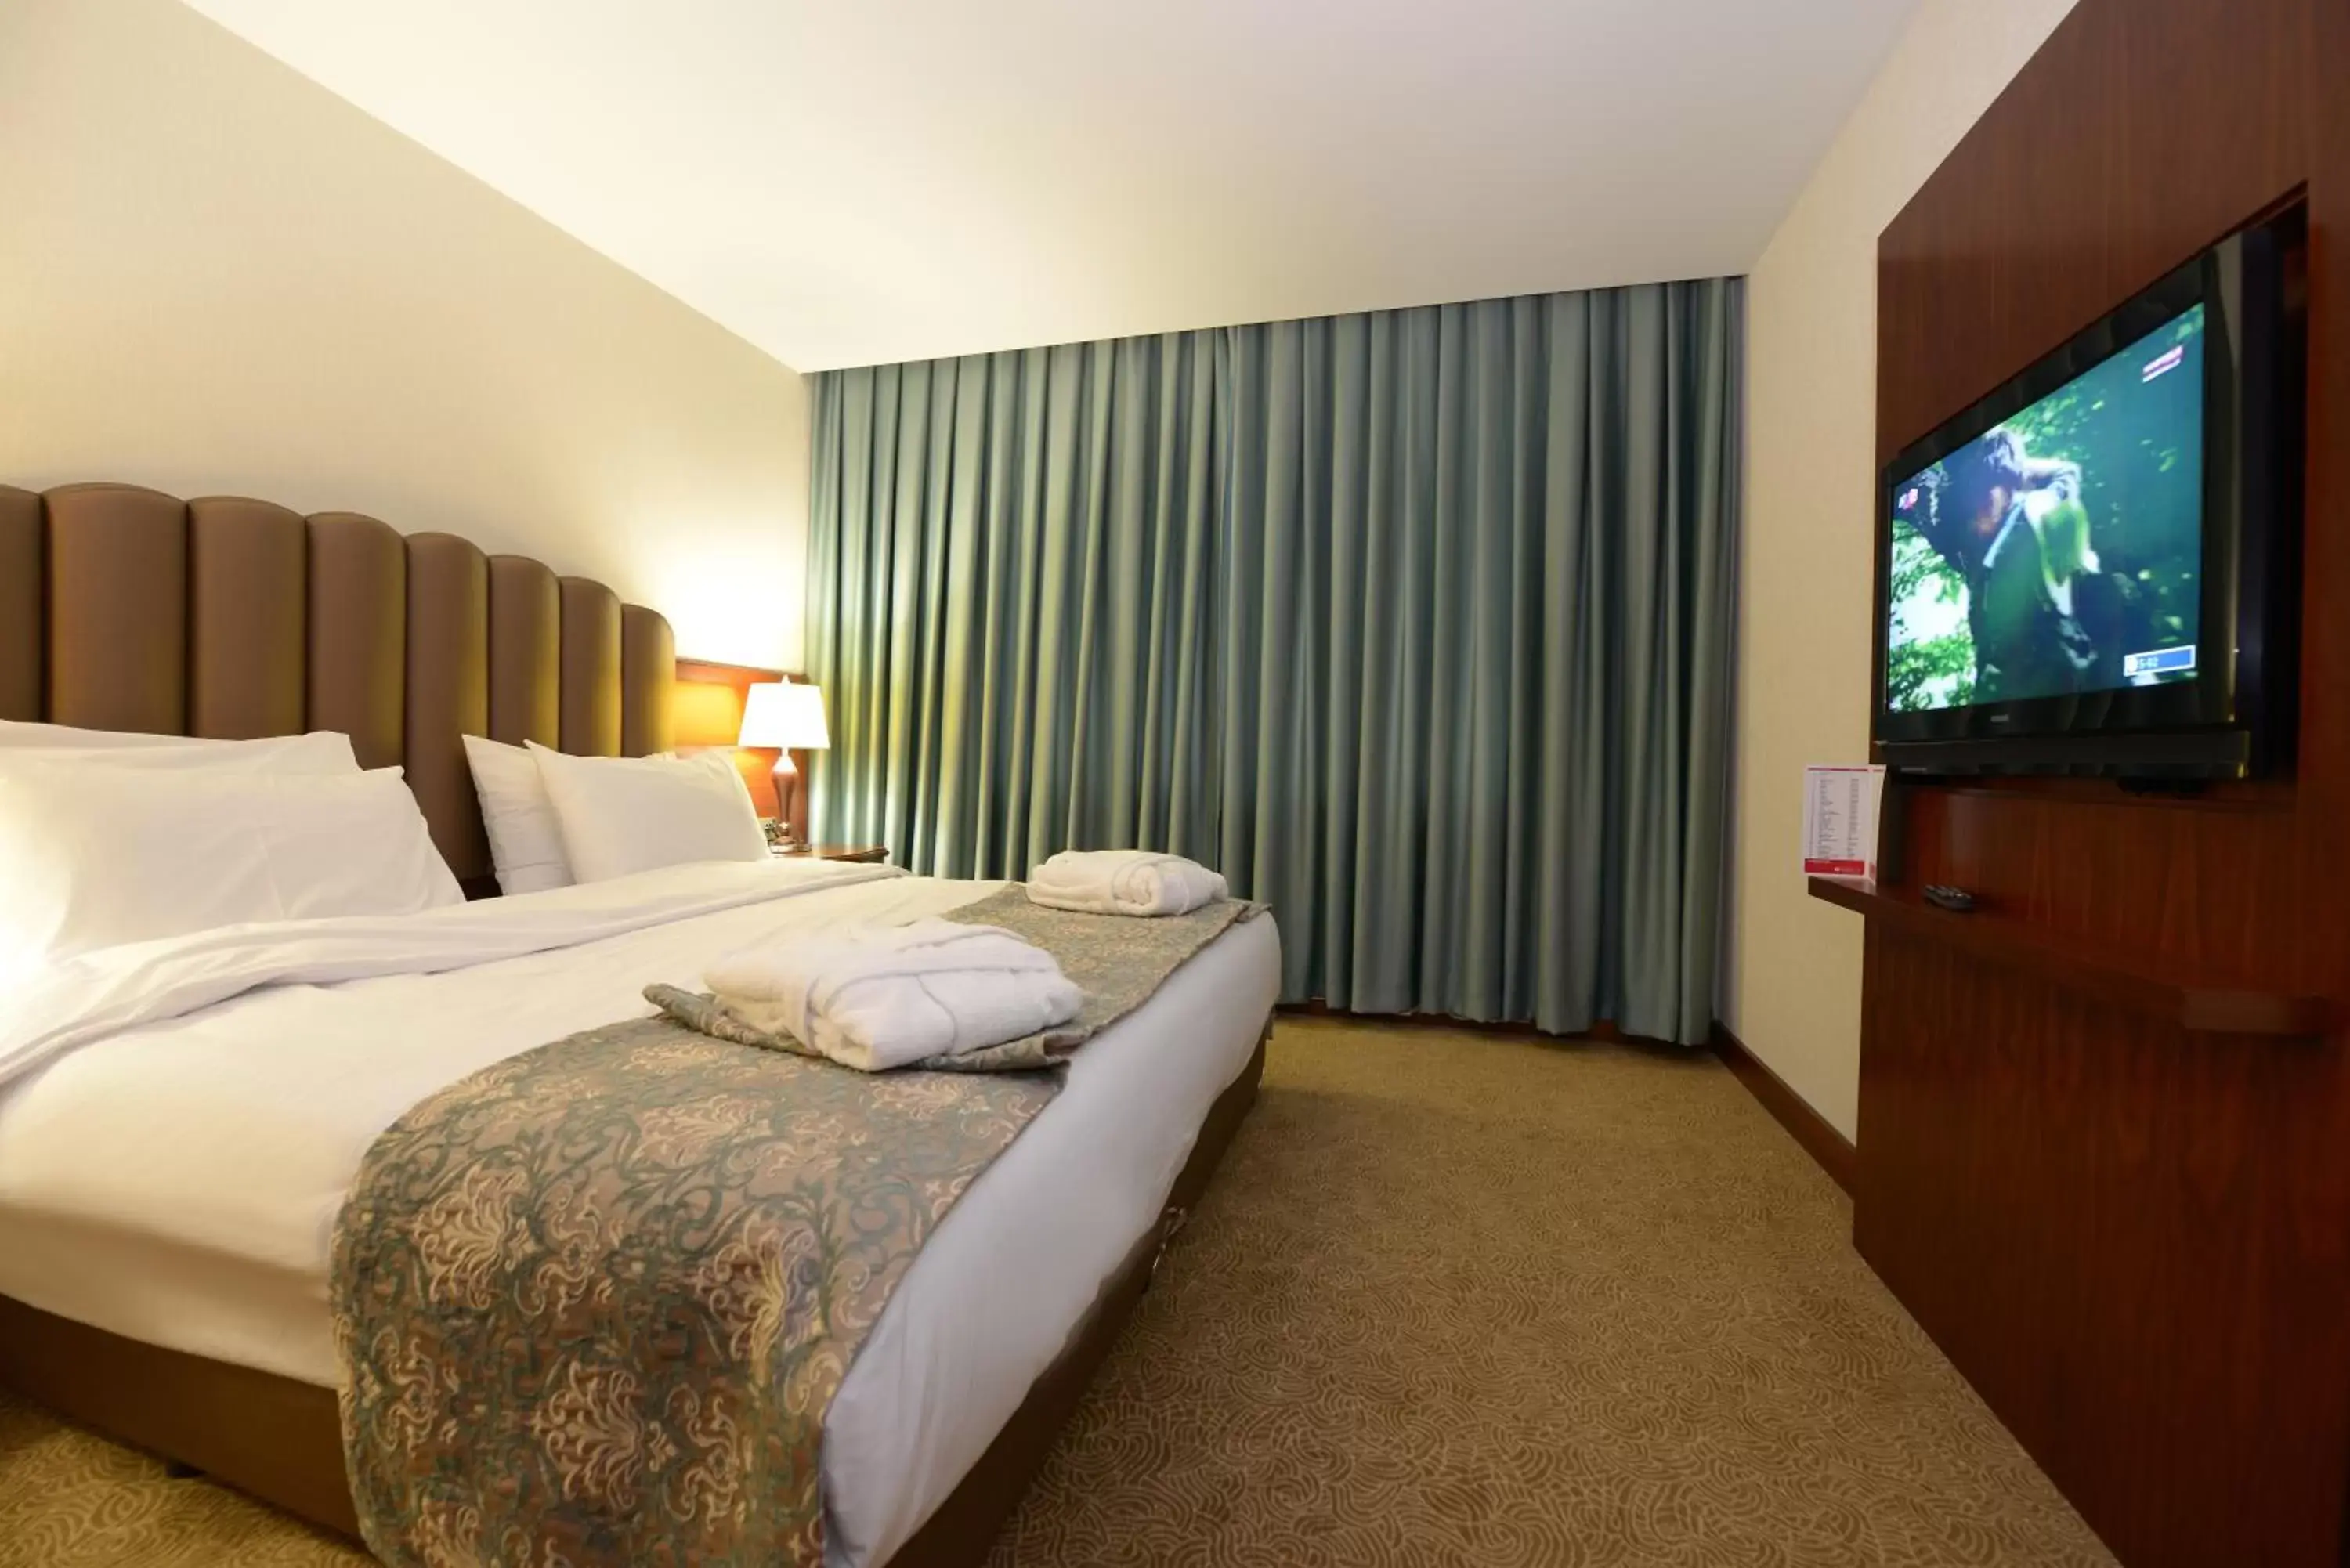 Bedroom, Bed in Ramada Plaza Altin Kayisi Hotel